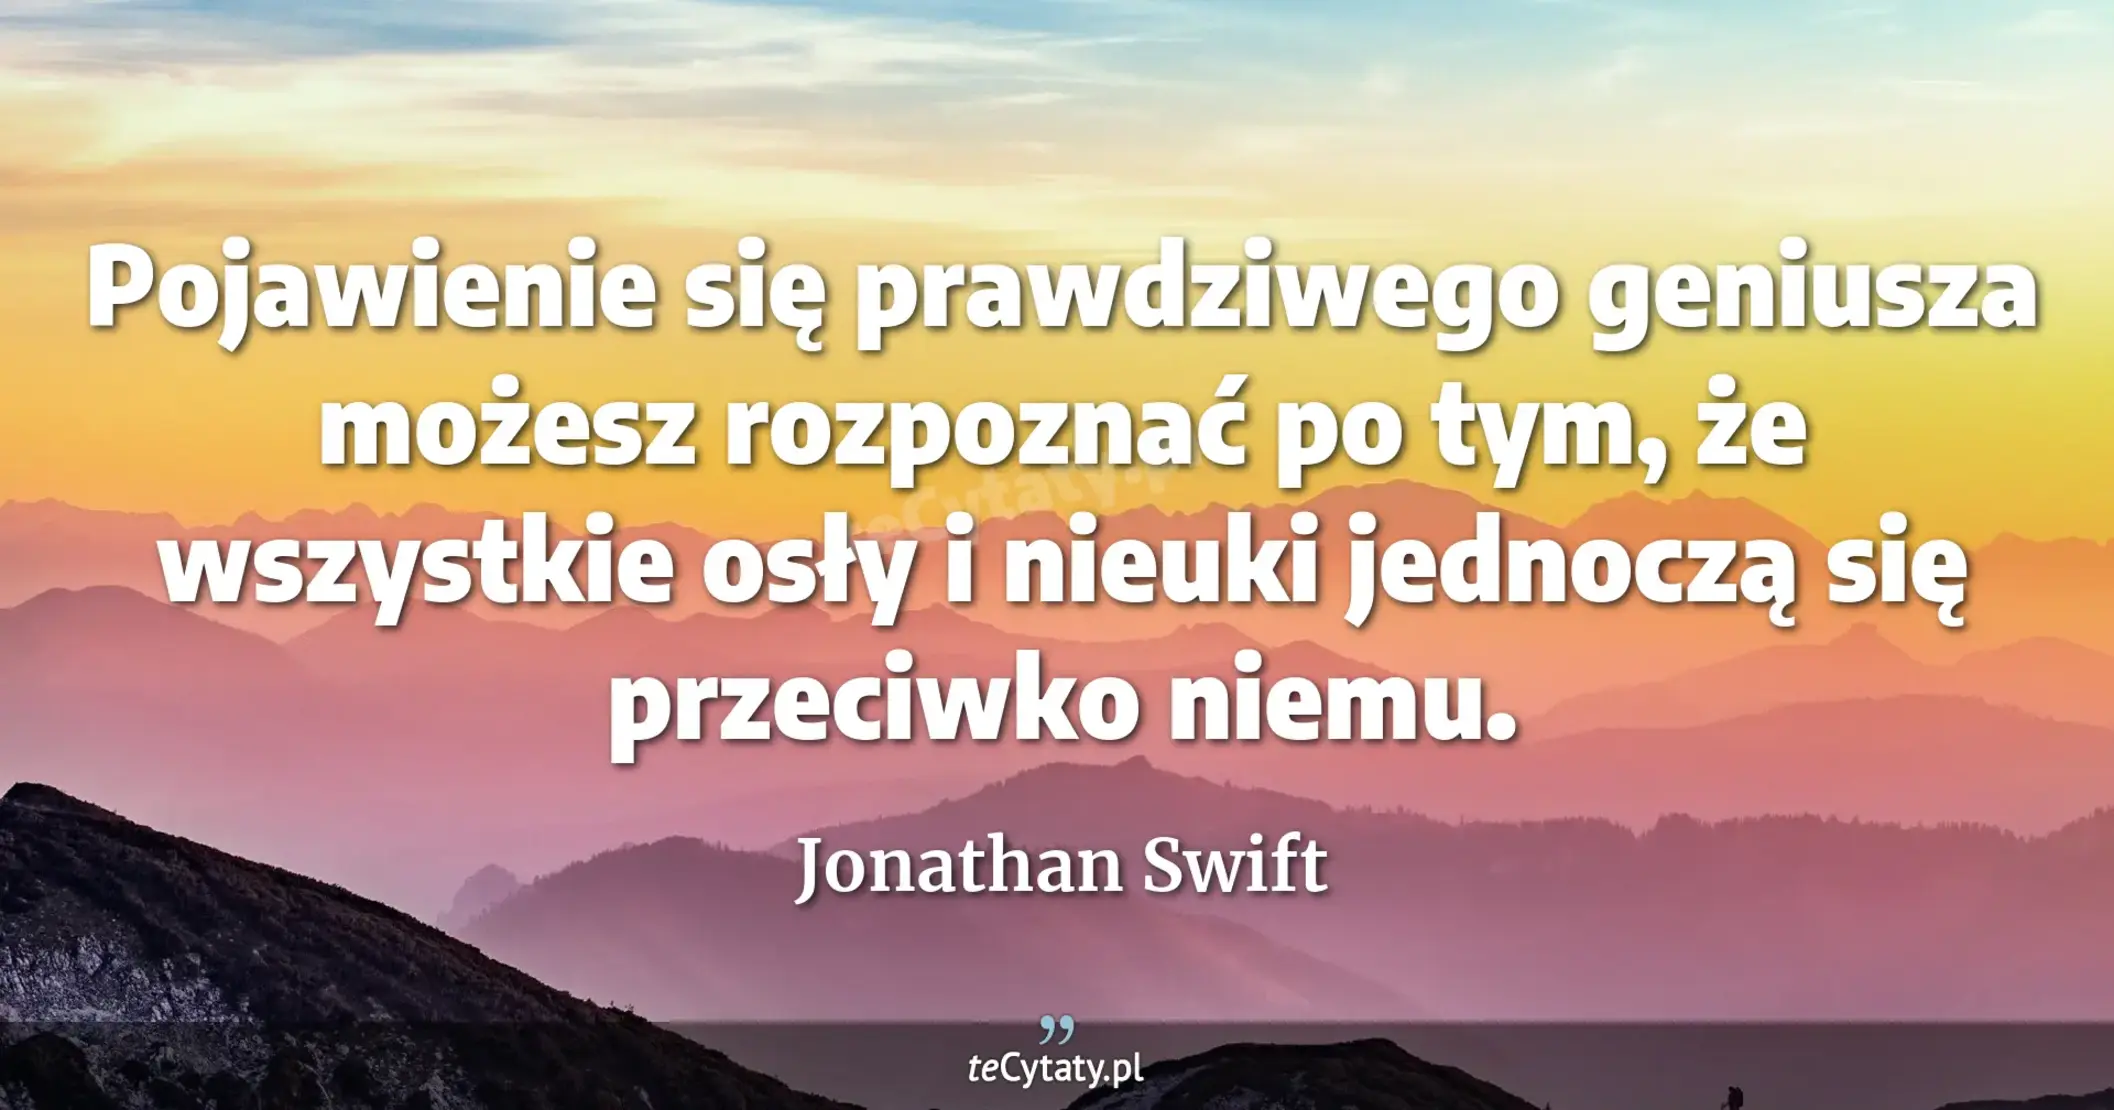 Pojawienie się prawdziwego geniusza możesz rozpoznać po tym, że wszystkie osły i nieuki jednoczą się przeciwko niemu. - Jonathan Swift